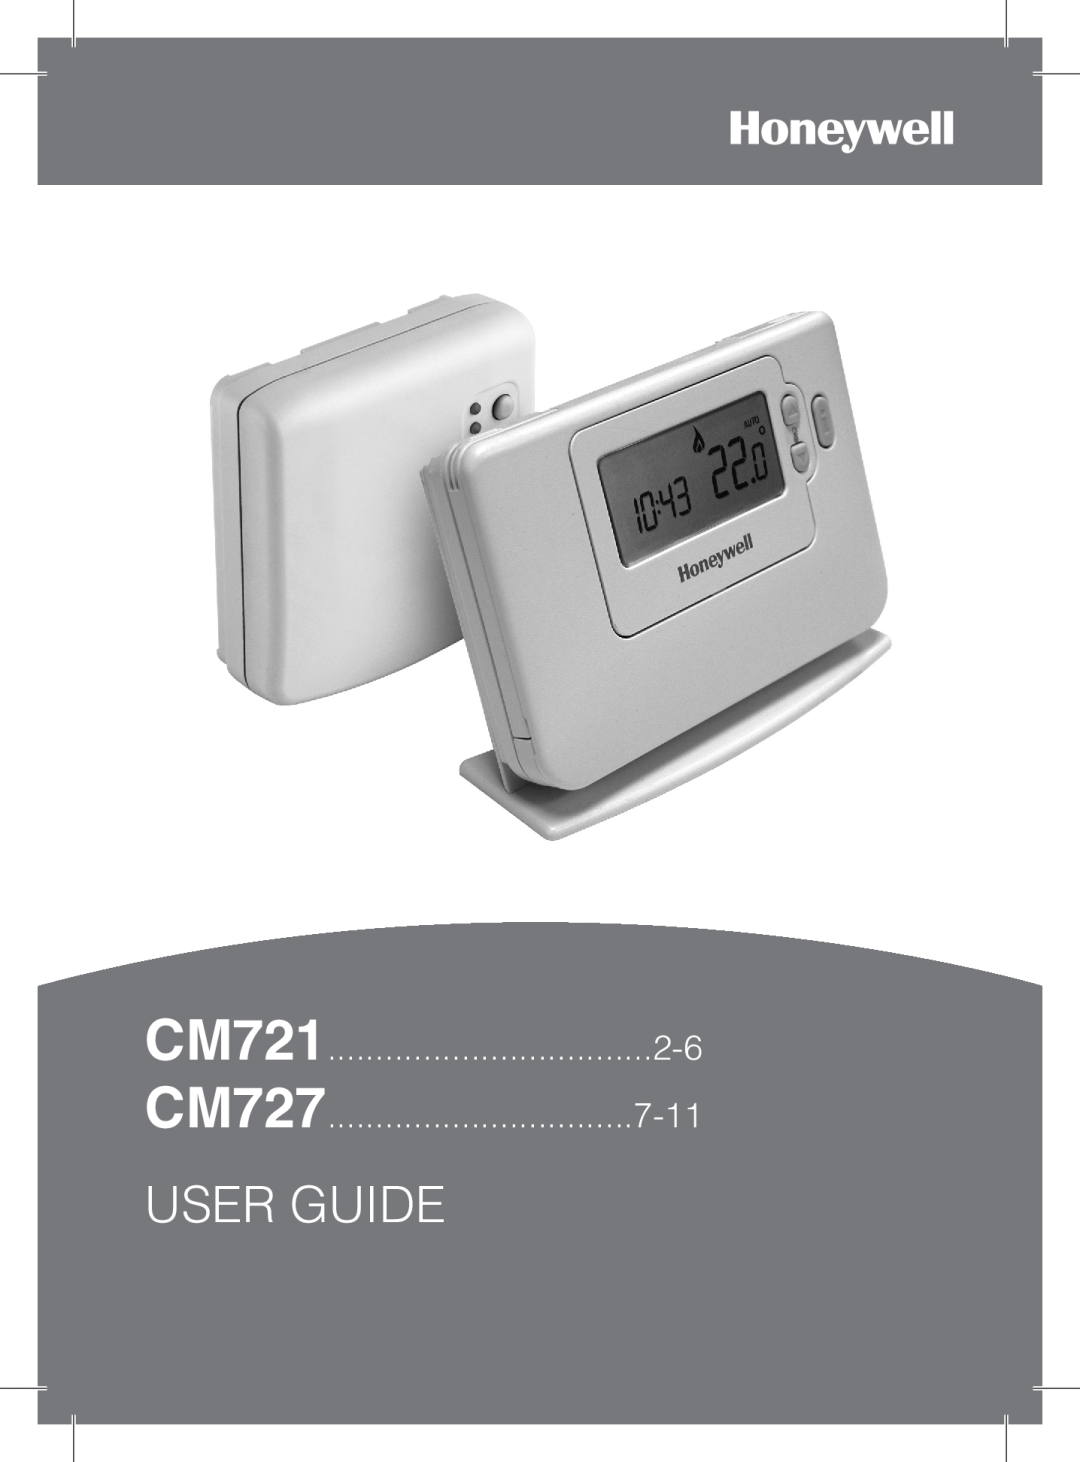 Honeywell CM721 manual CM727, User Guide, 7-11 